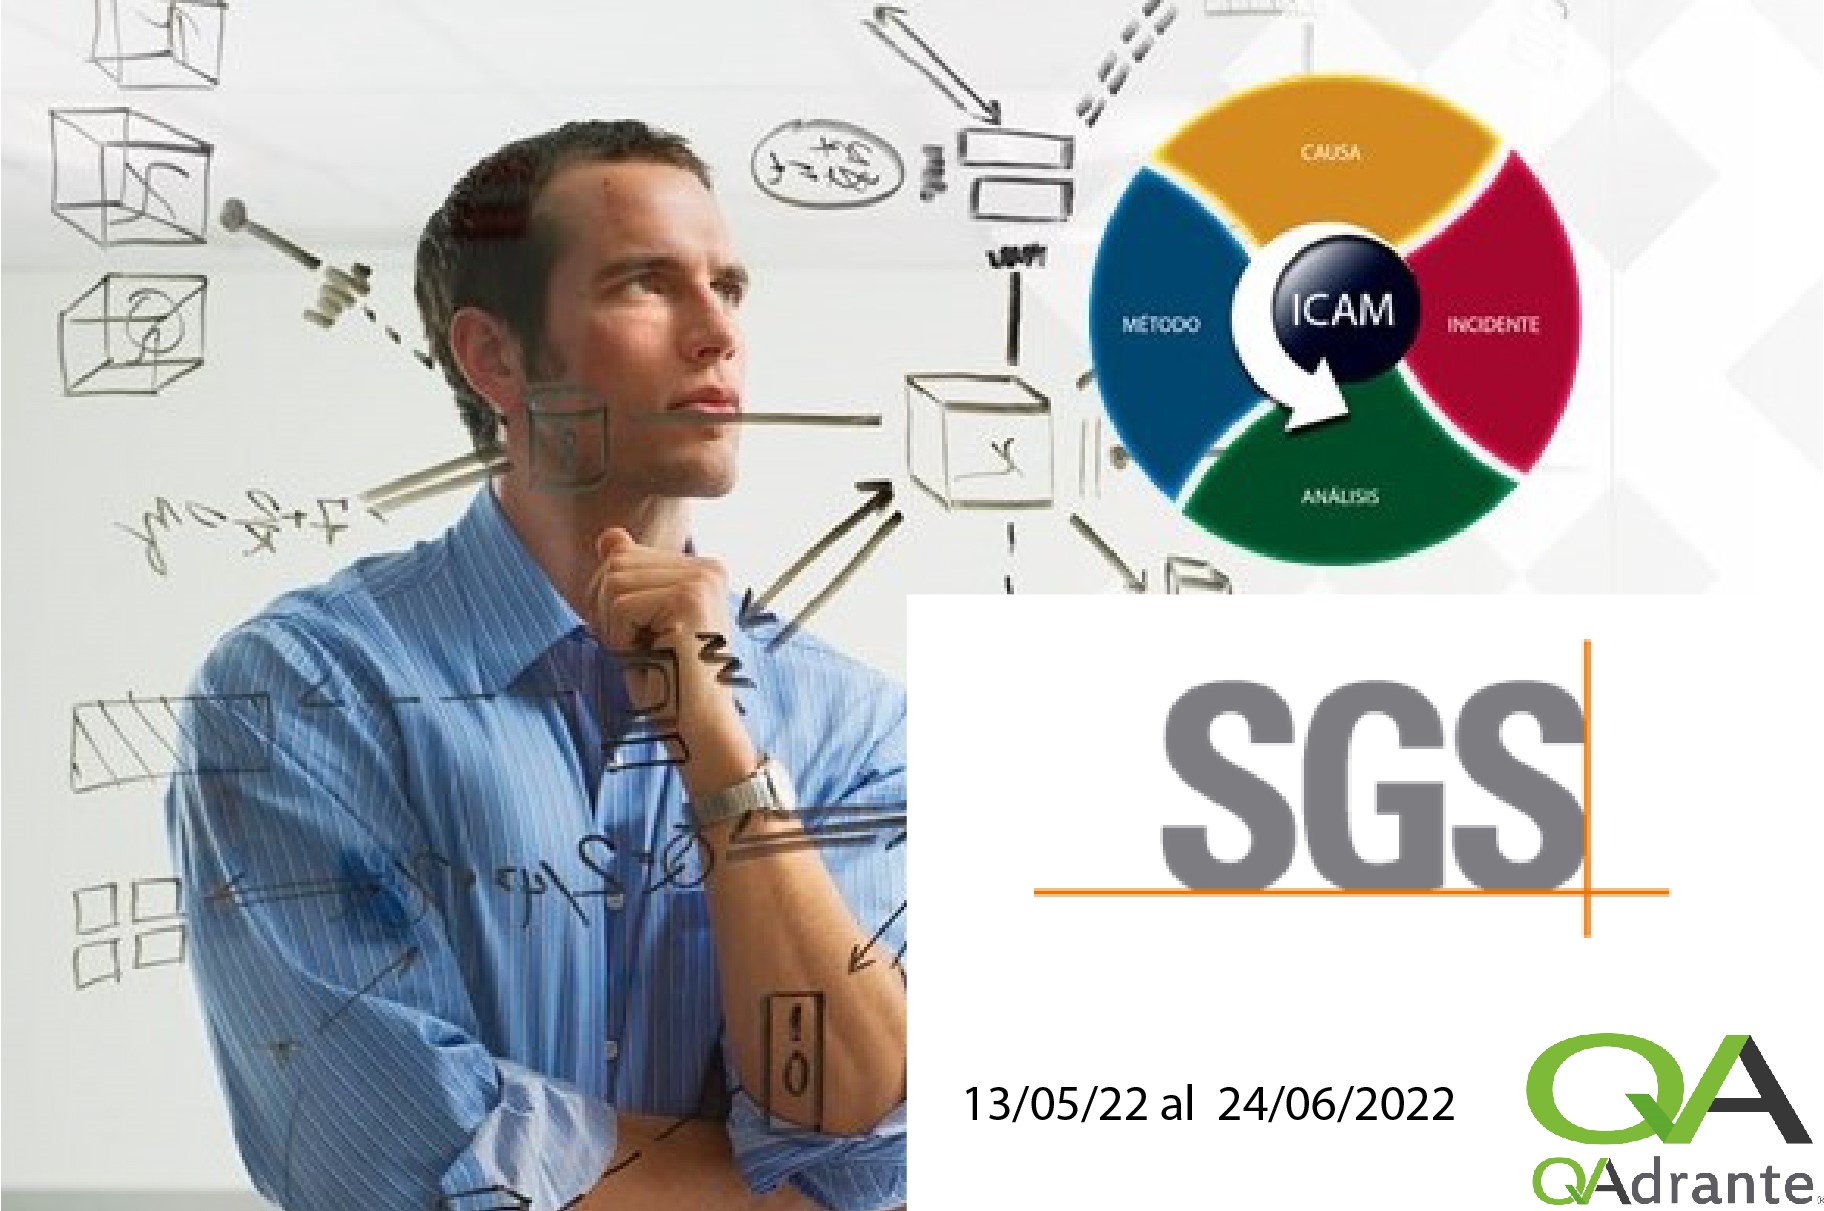 SGS - Metodología de Análisis de Causas de Accidentes - ICAM